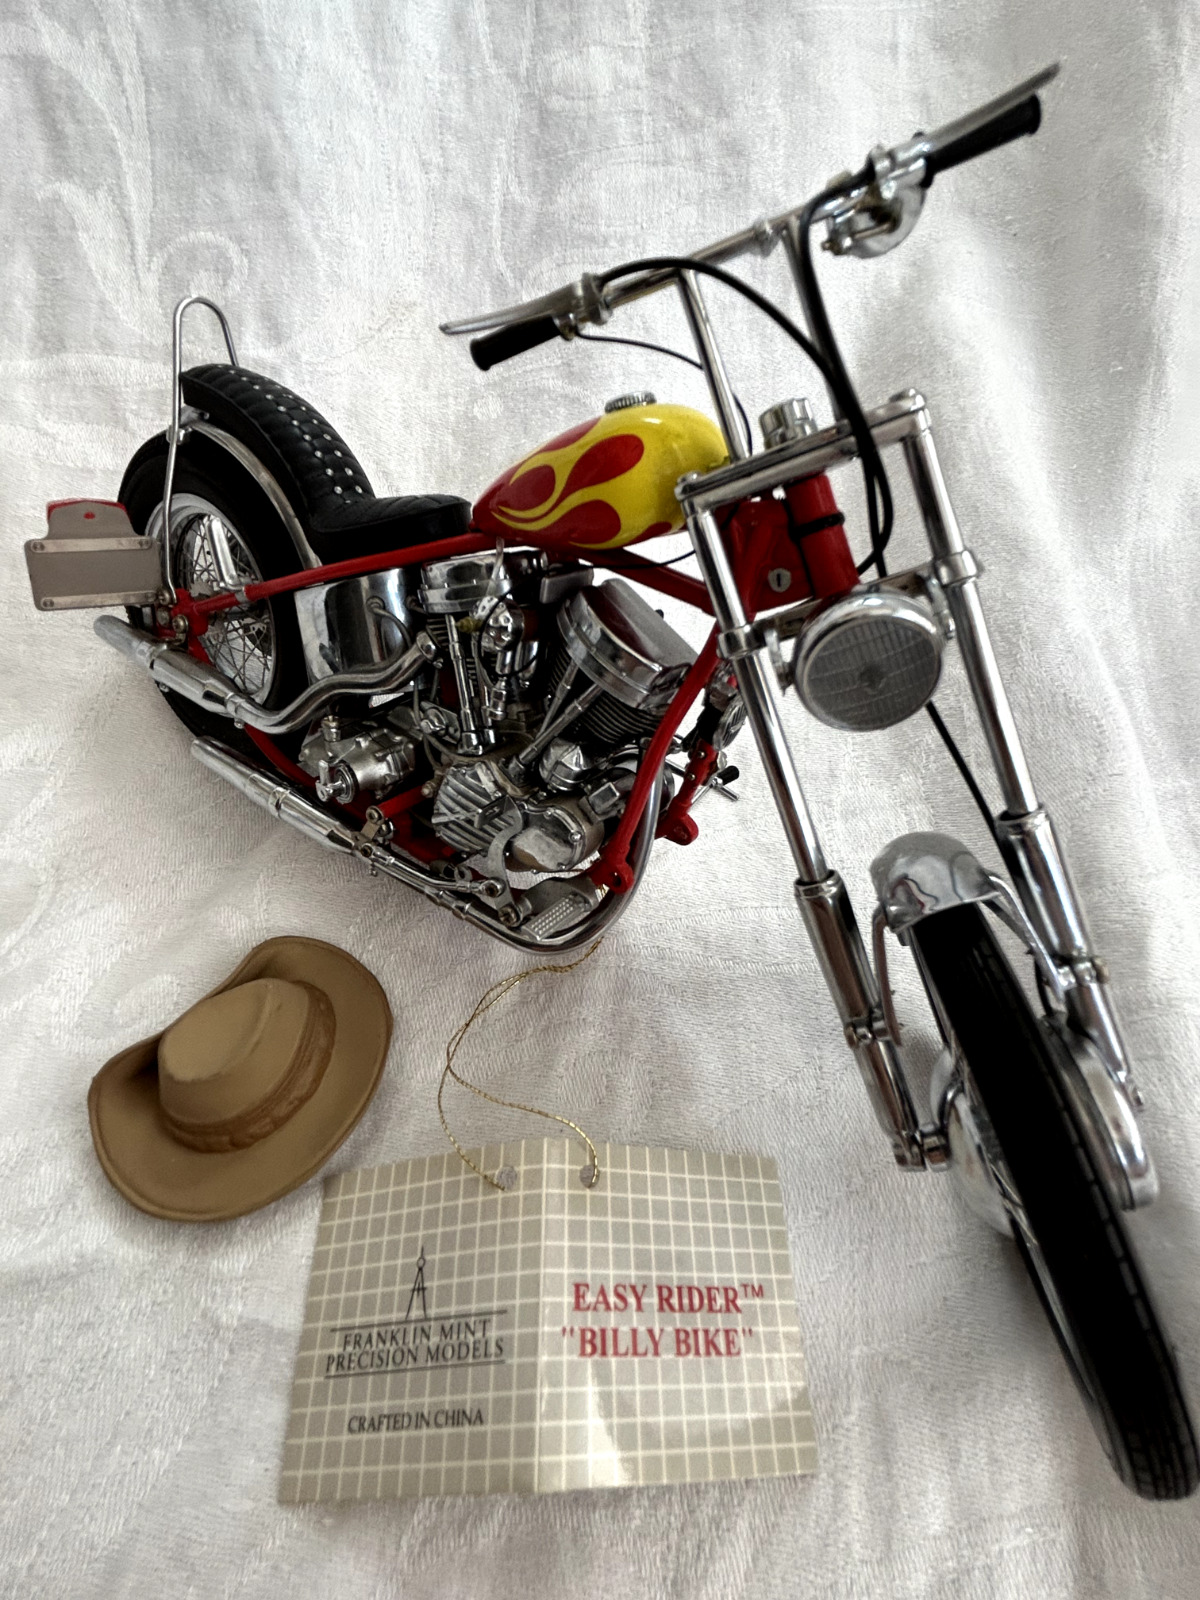 Franklin Mint 1/10 Scale Harley Davidson Easy Rider Billy Bike Chopper w/tag